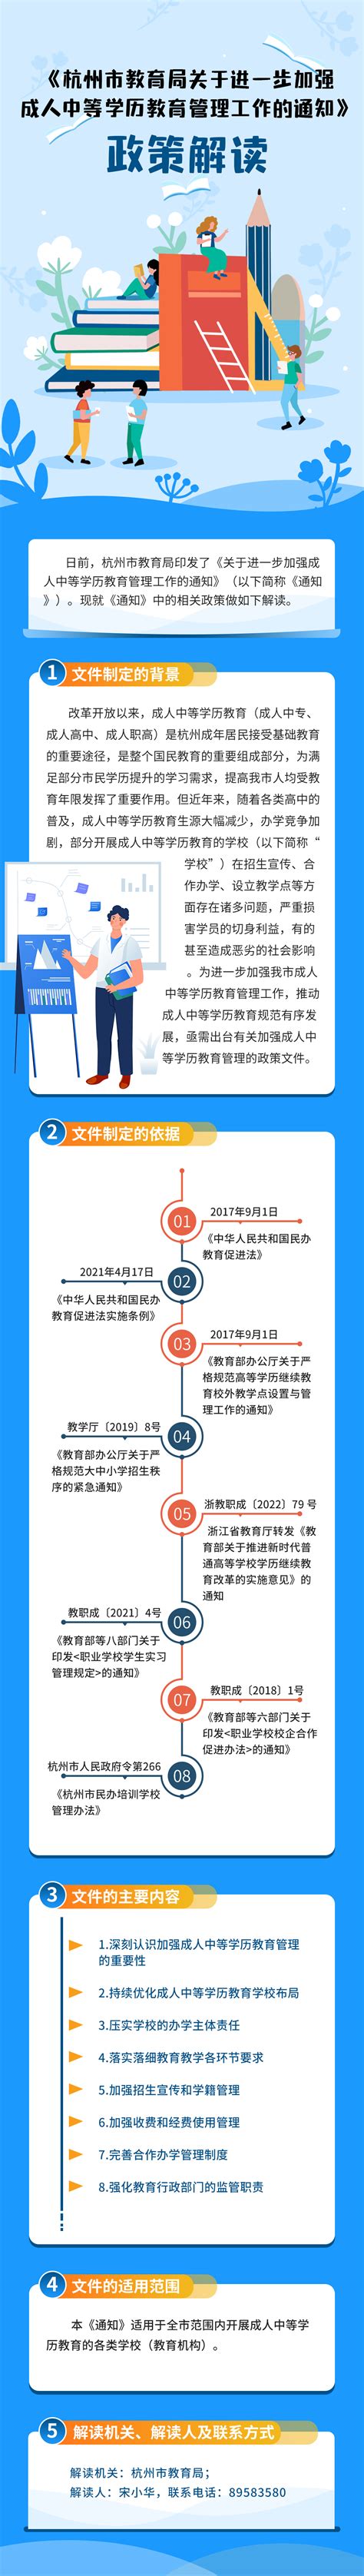 《杭州市教育局关于进一步加强成人中等学历教育管理工作的通知》图文政策解读